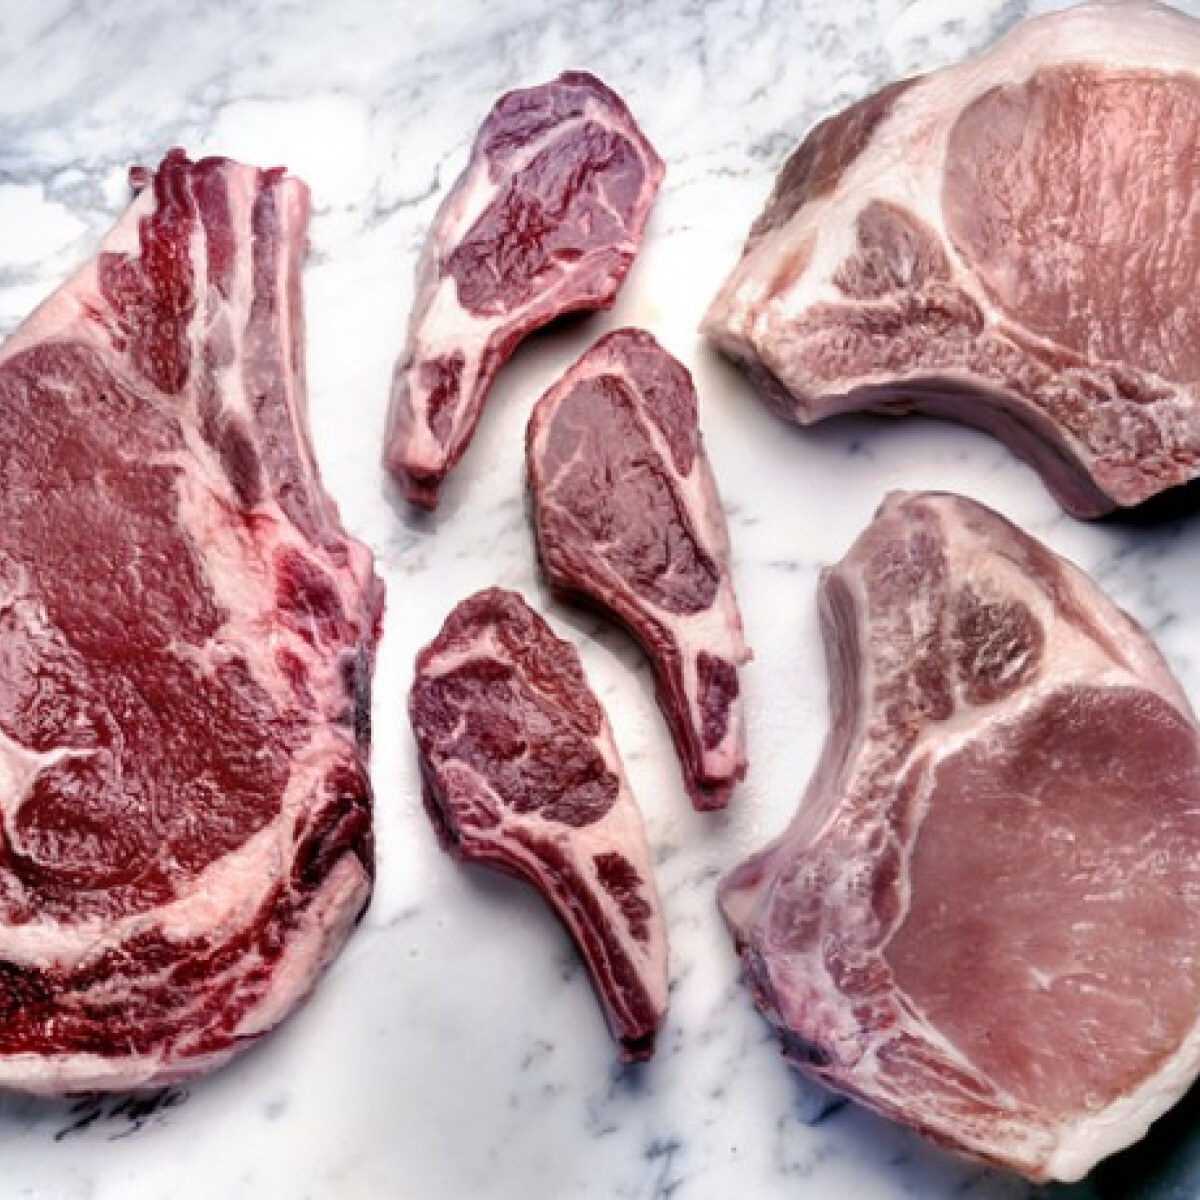 Ilyen a LION diéta, ami alatt kizárólag húst lehet enni – hát normális ez?